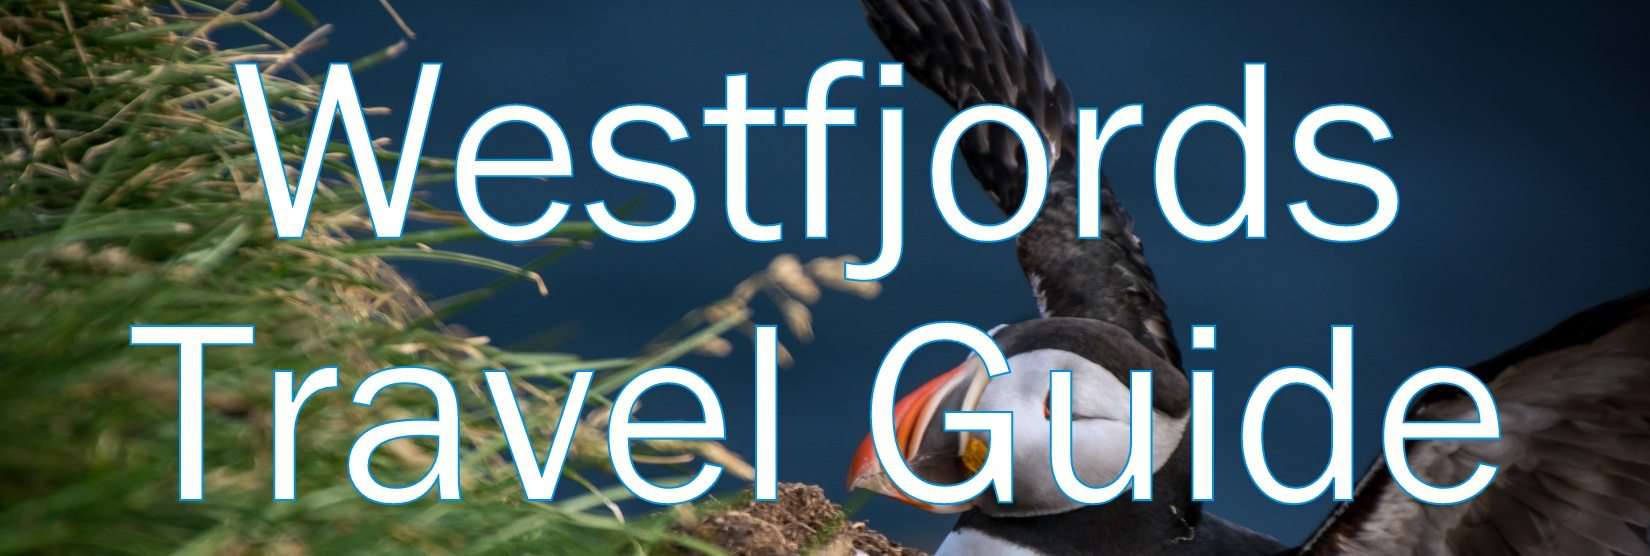 Westfjords Travel Guide